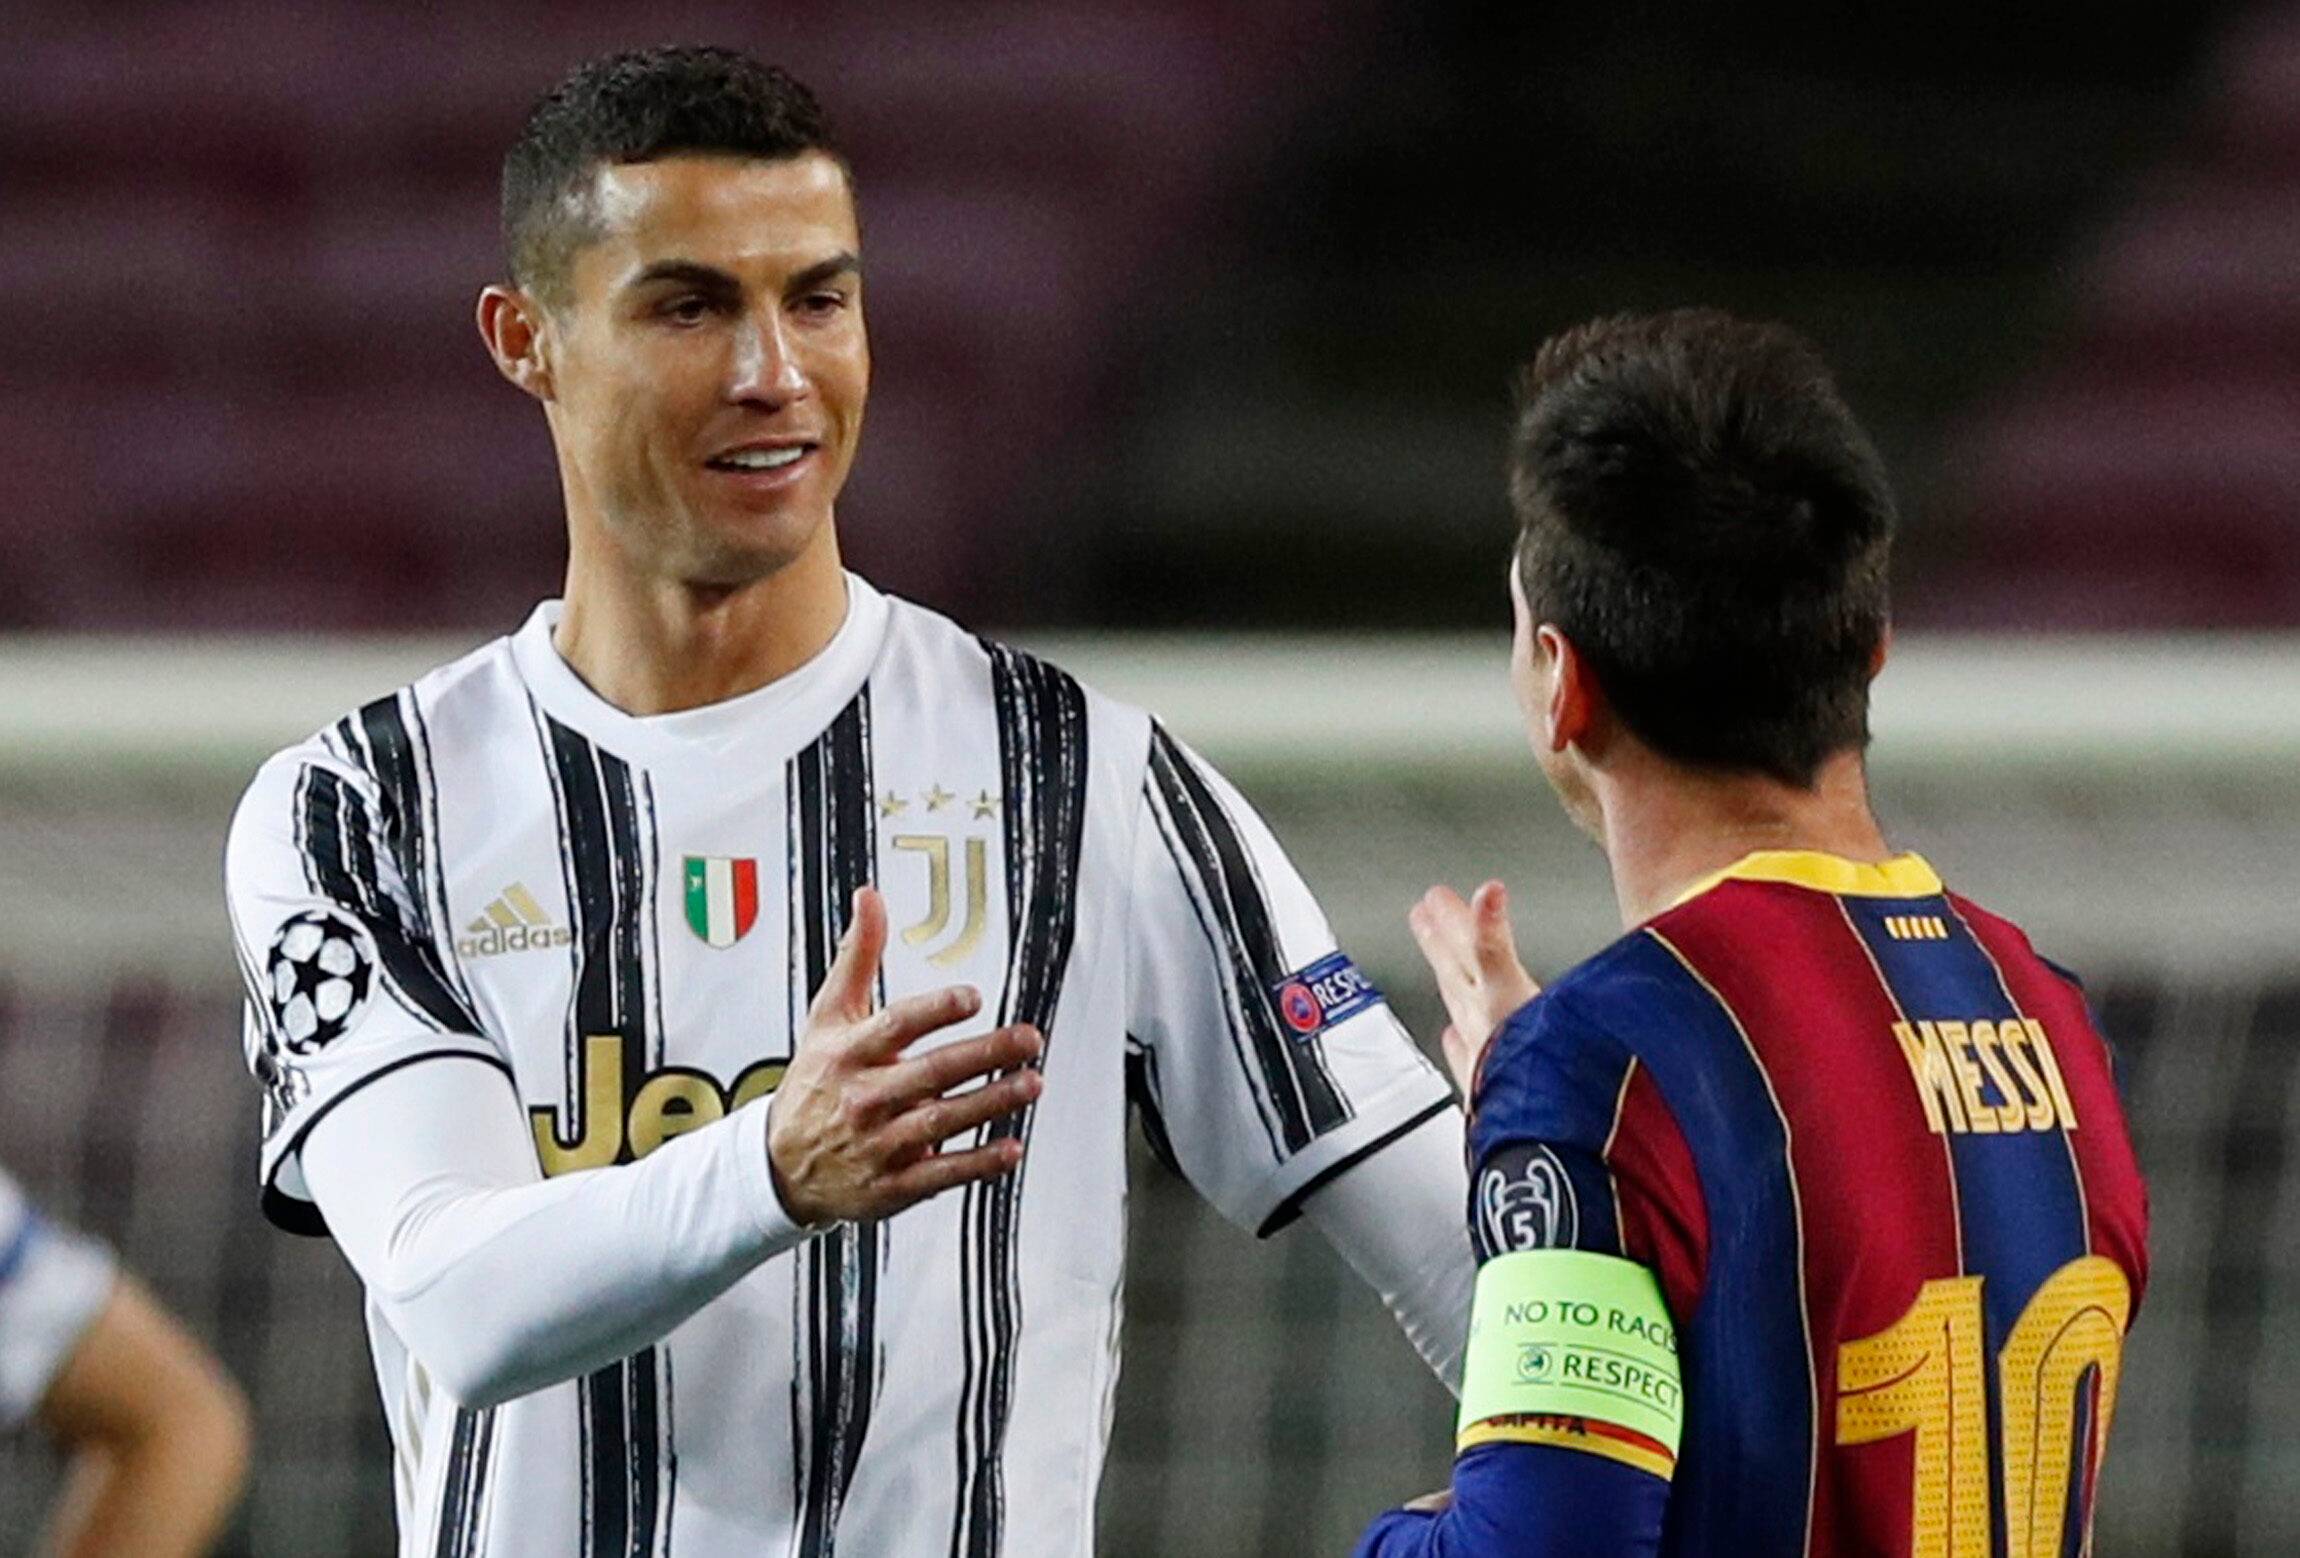 Ronaldo and Messi shake hands.